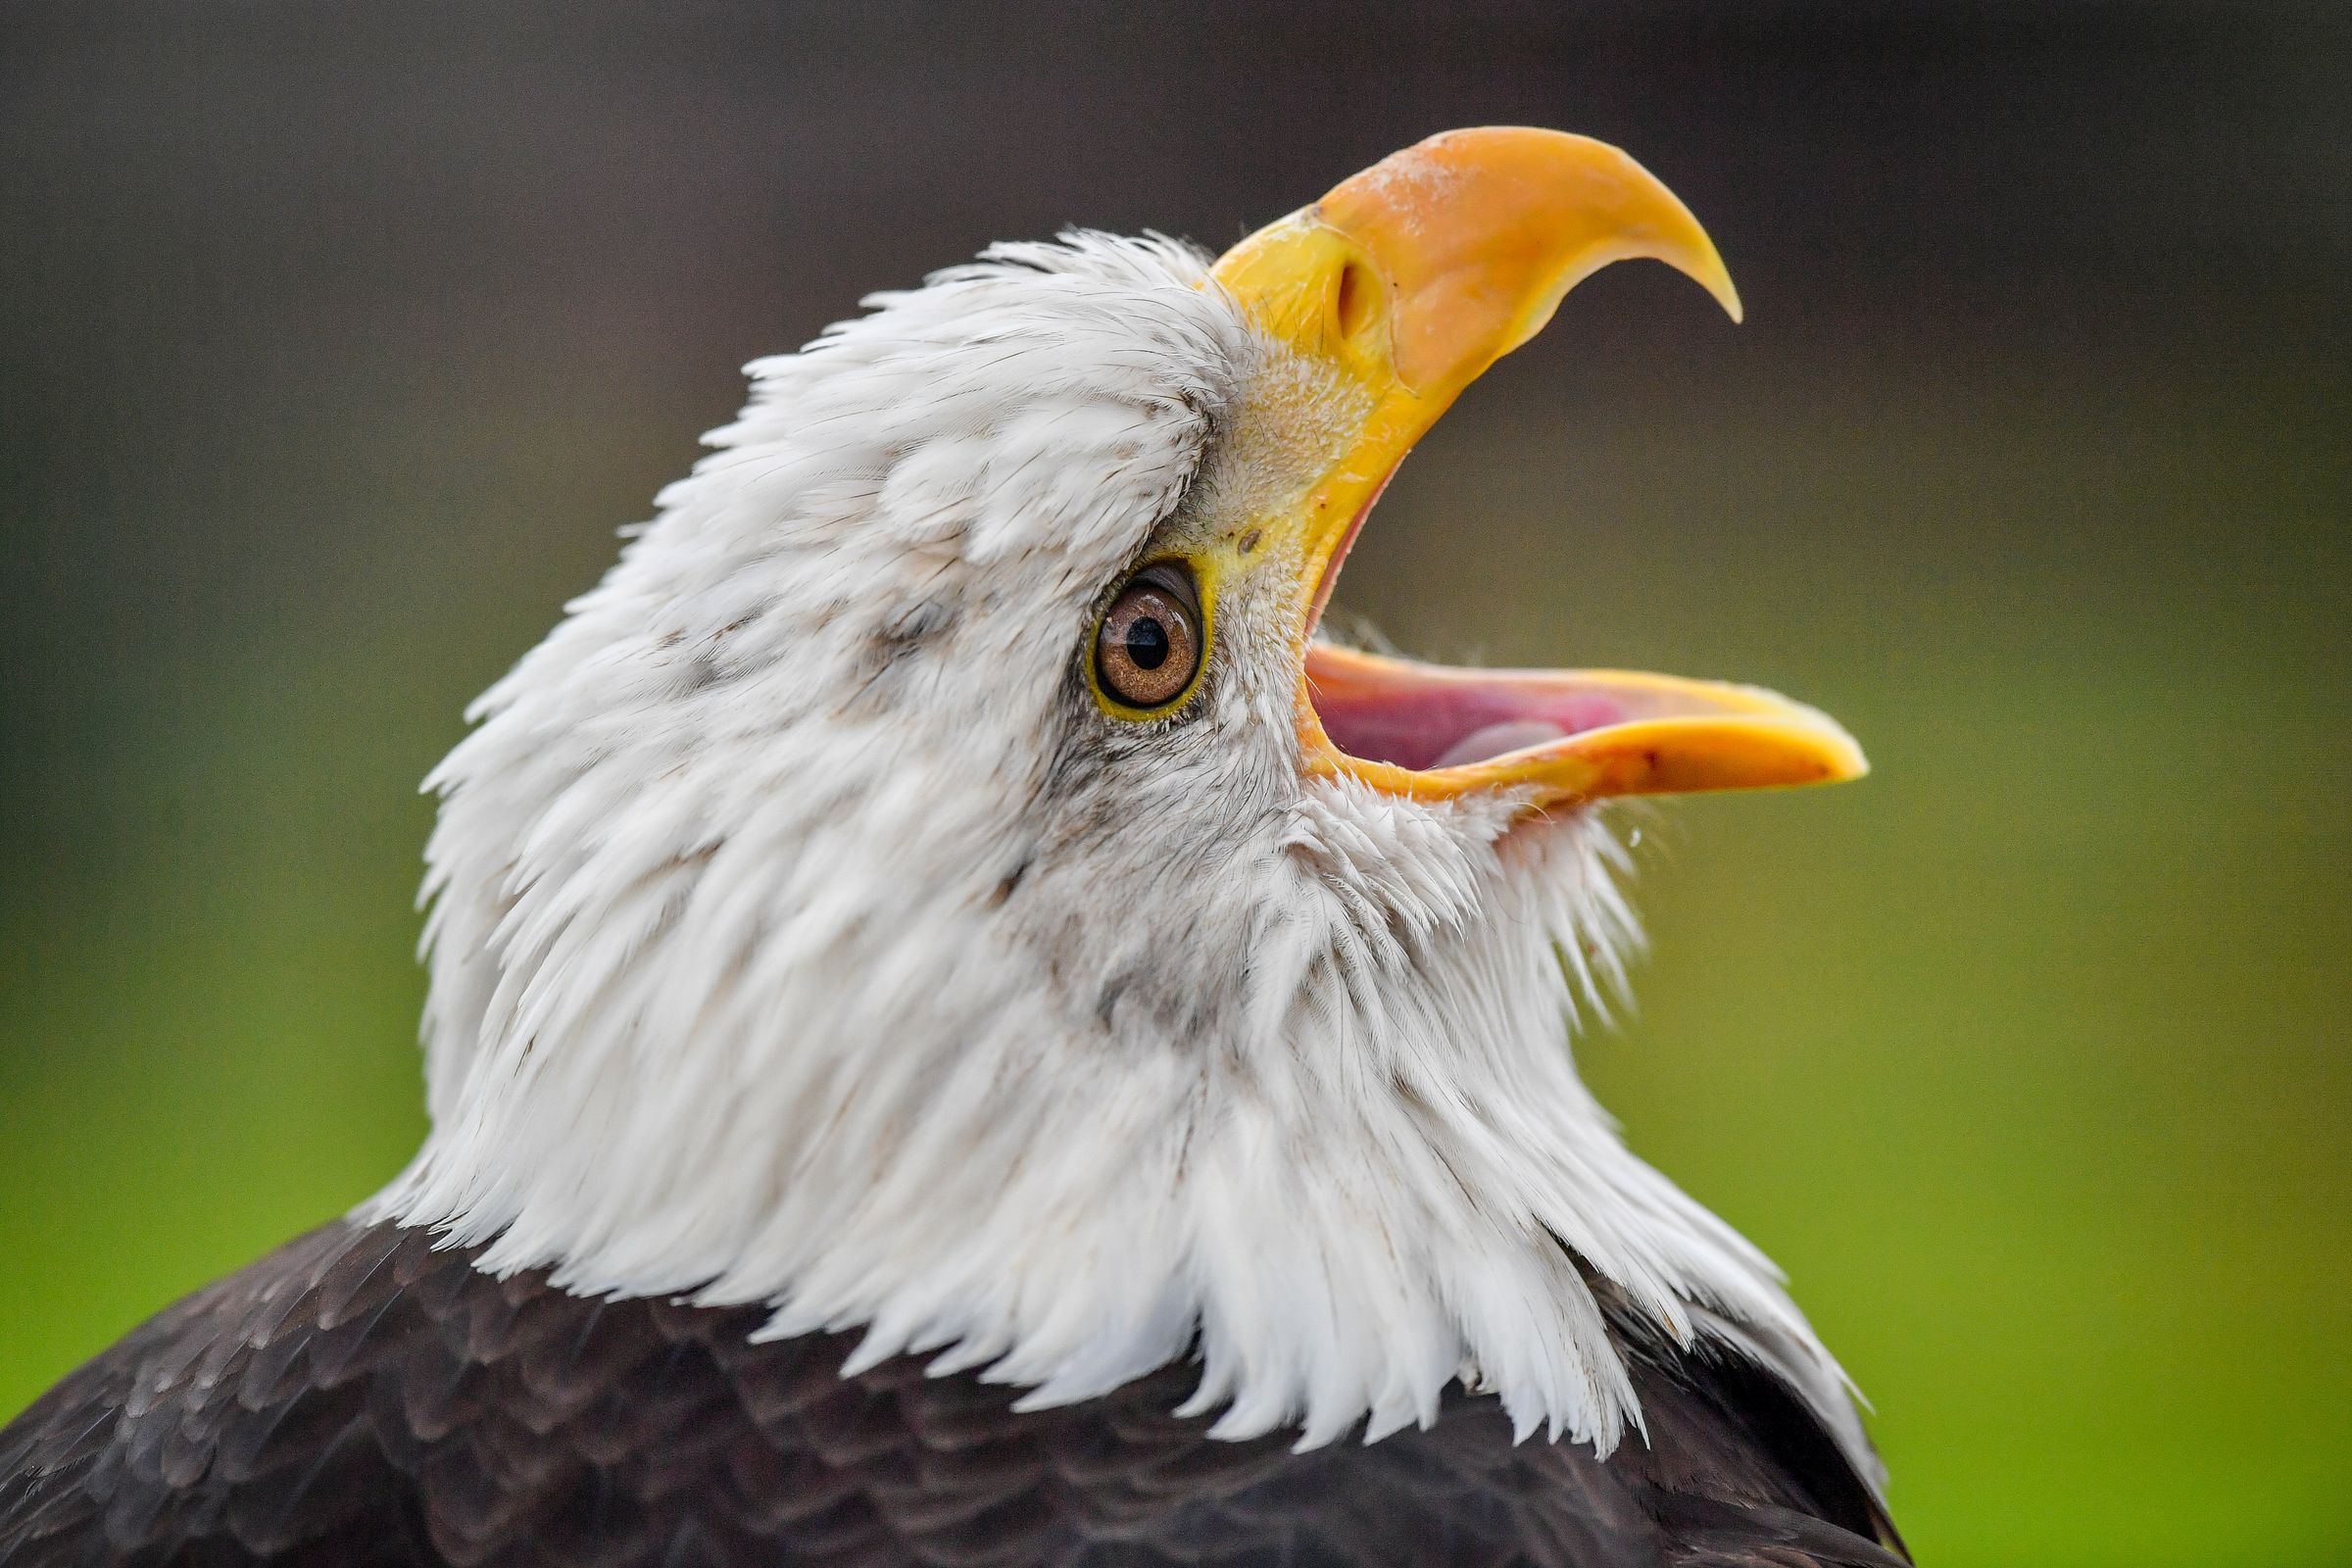 Bald eagle yelling with beak open